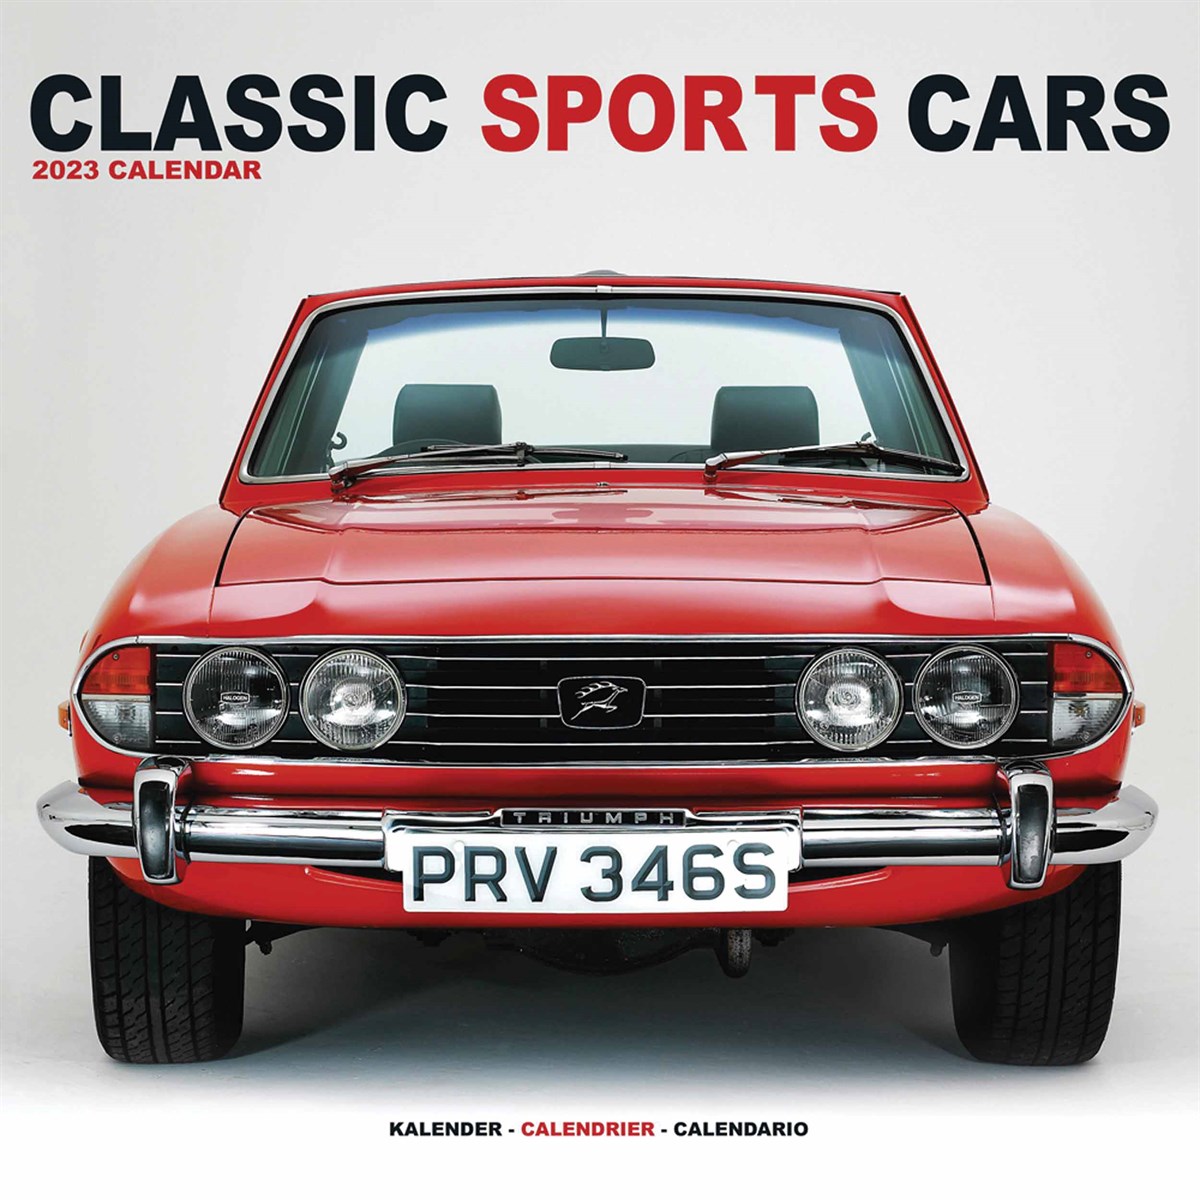 Classic Sports Cars 2023 Calendars